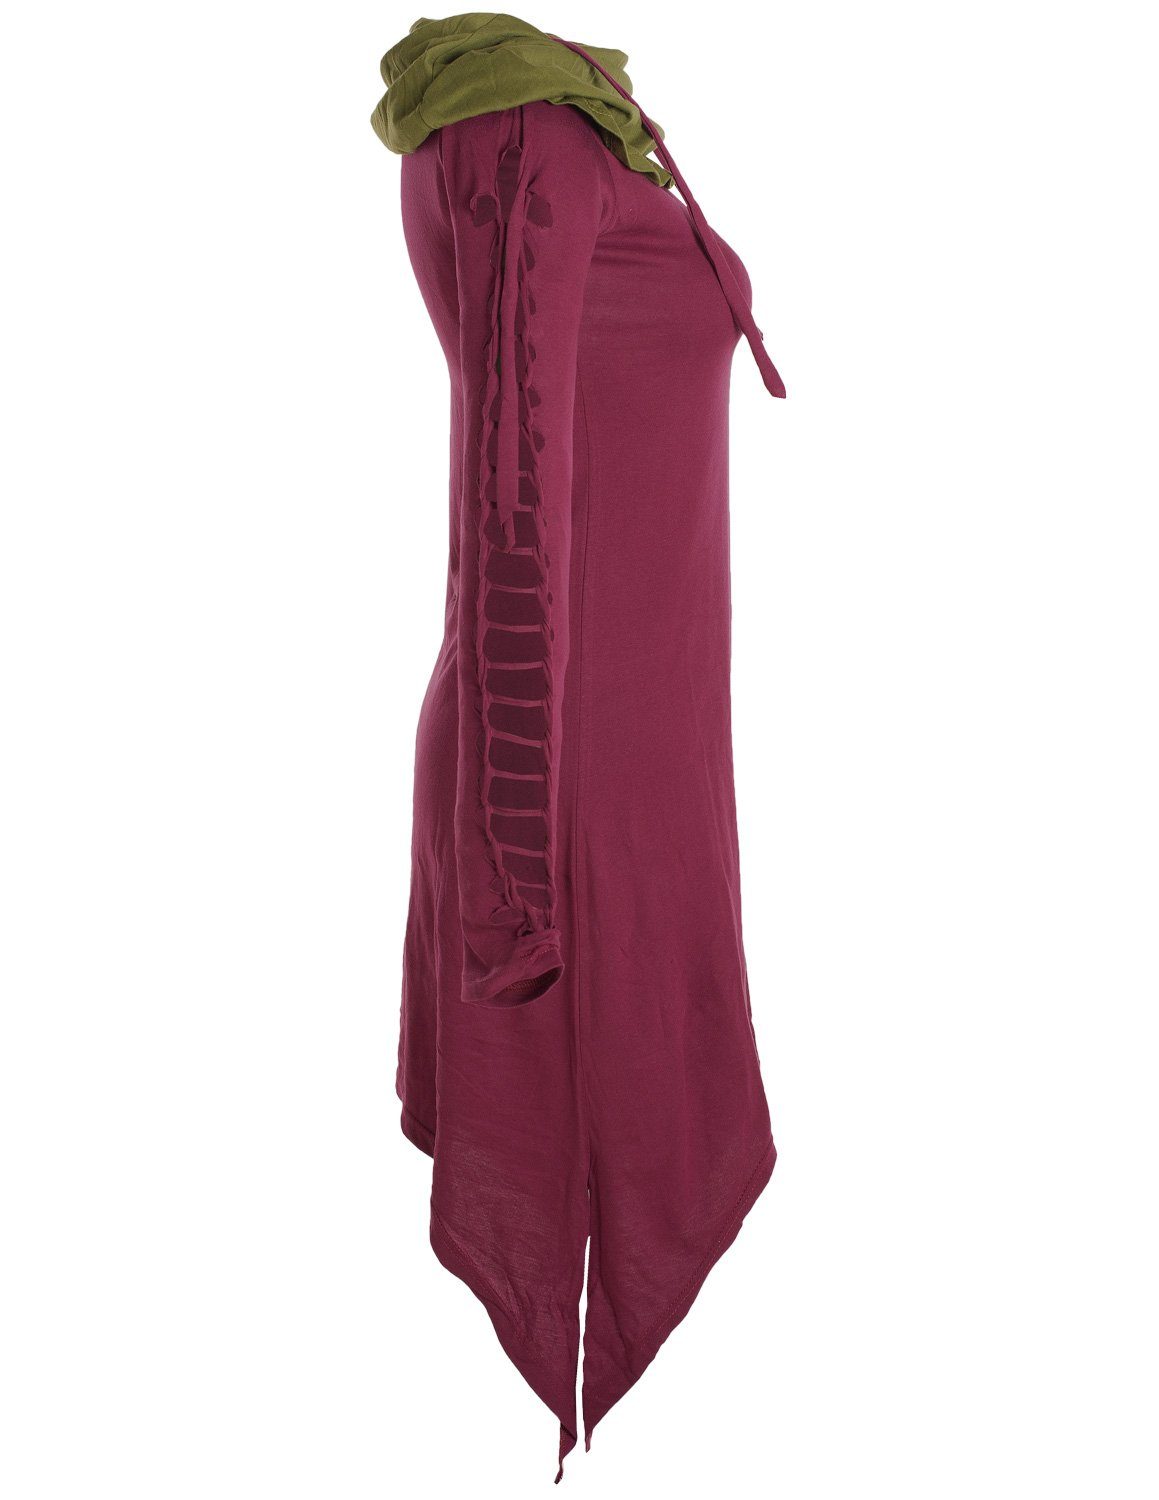 Kleid aus Boho, Ethne, Vishes Elfen Style langarm mit Zweifarbiges dunkelrot Goa, Biobaumwolle Schalkragen Zipfelkleid